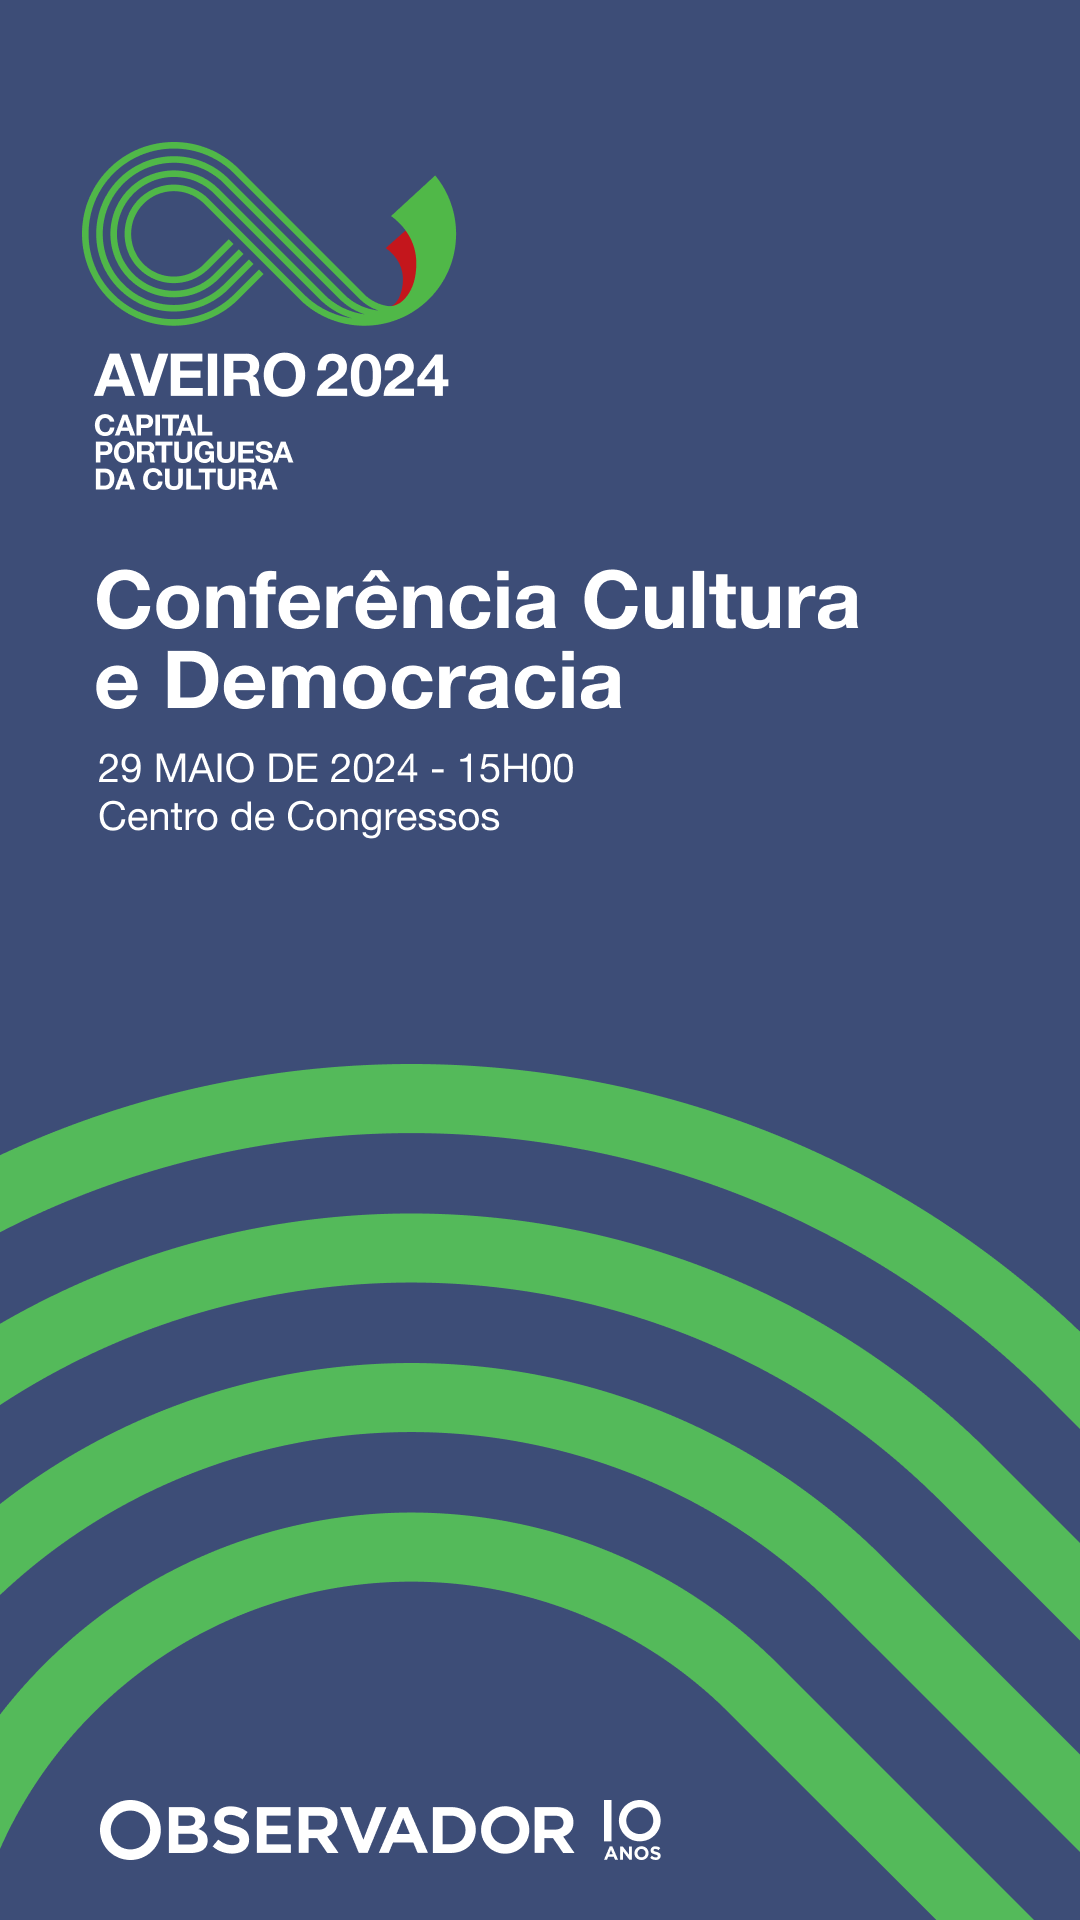 Primeiro-Ministro e Presidente da Câmara de Aveiro participam na Conferência ‘Cultura e Democracia’